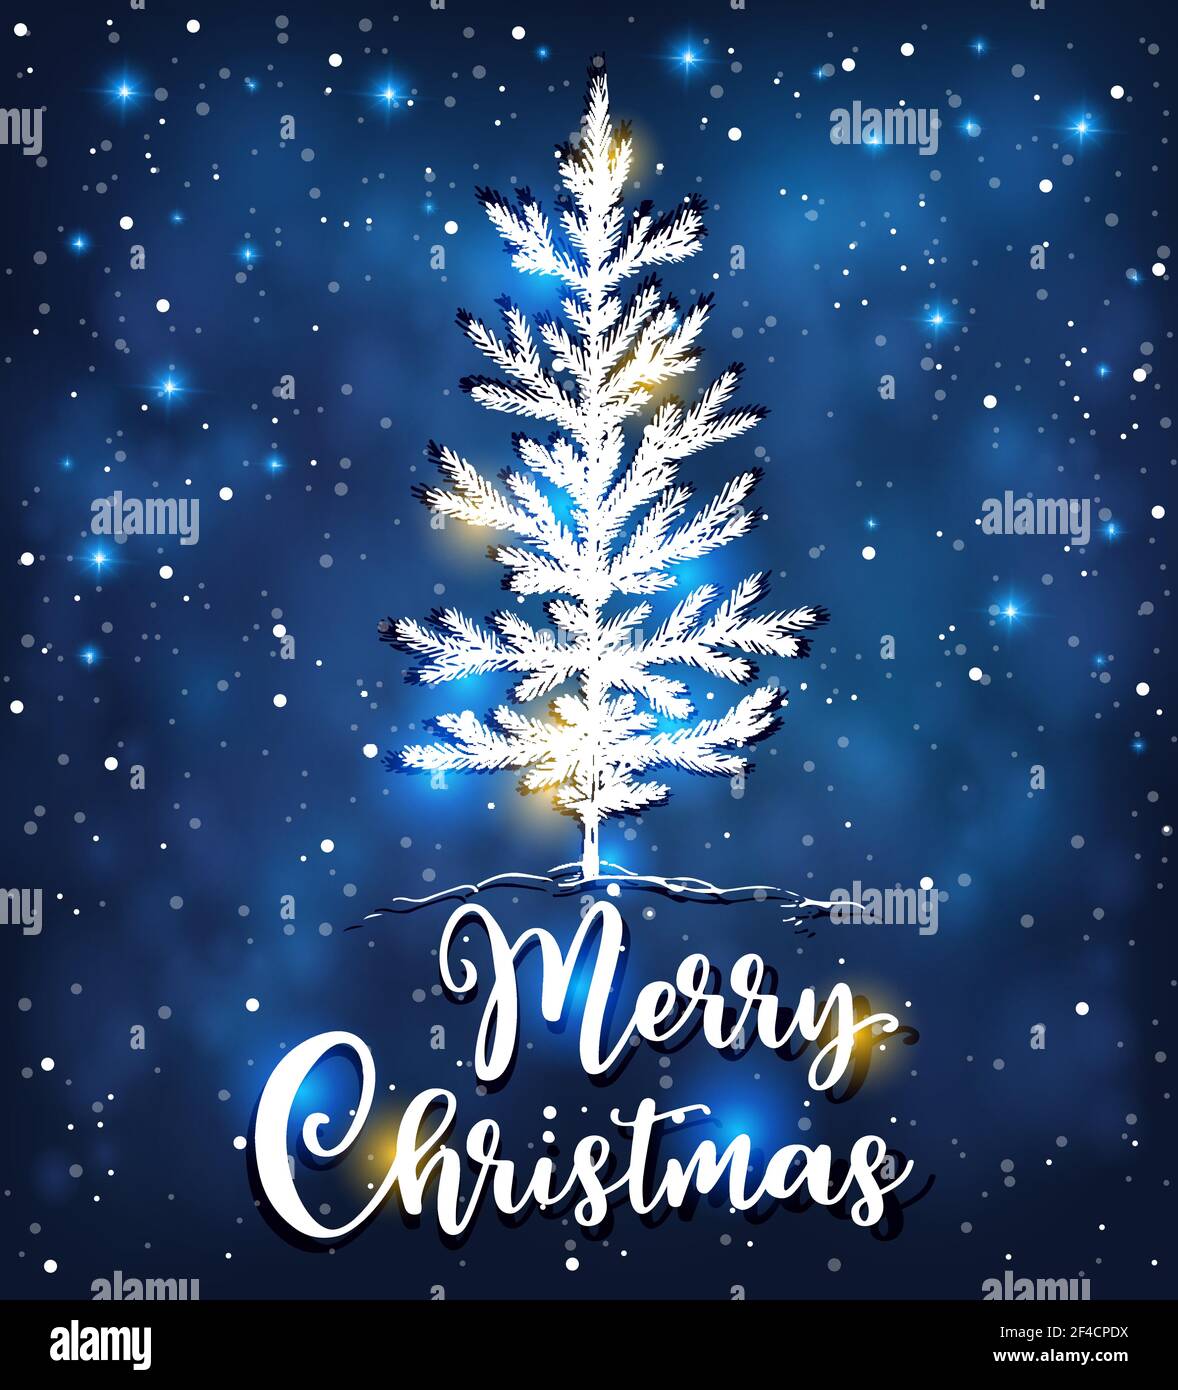 Weihnachten Vektor Hintergrund mit weißen Tannenbaum. Neujahrskarte. Fröhliche Weihnachtsschrift Stock Vektor